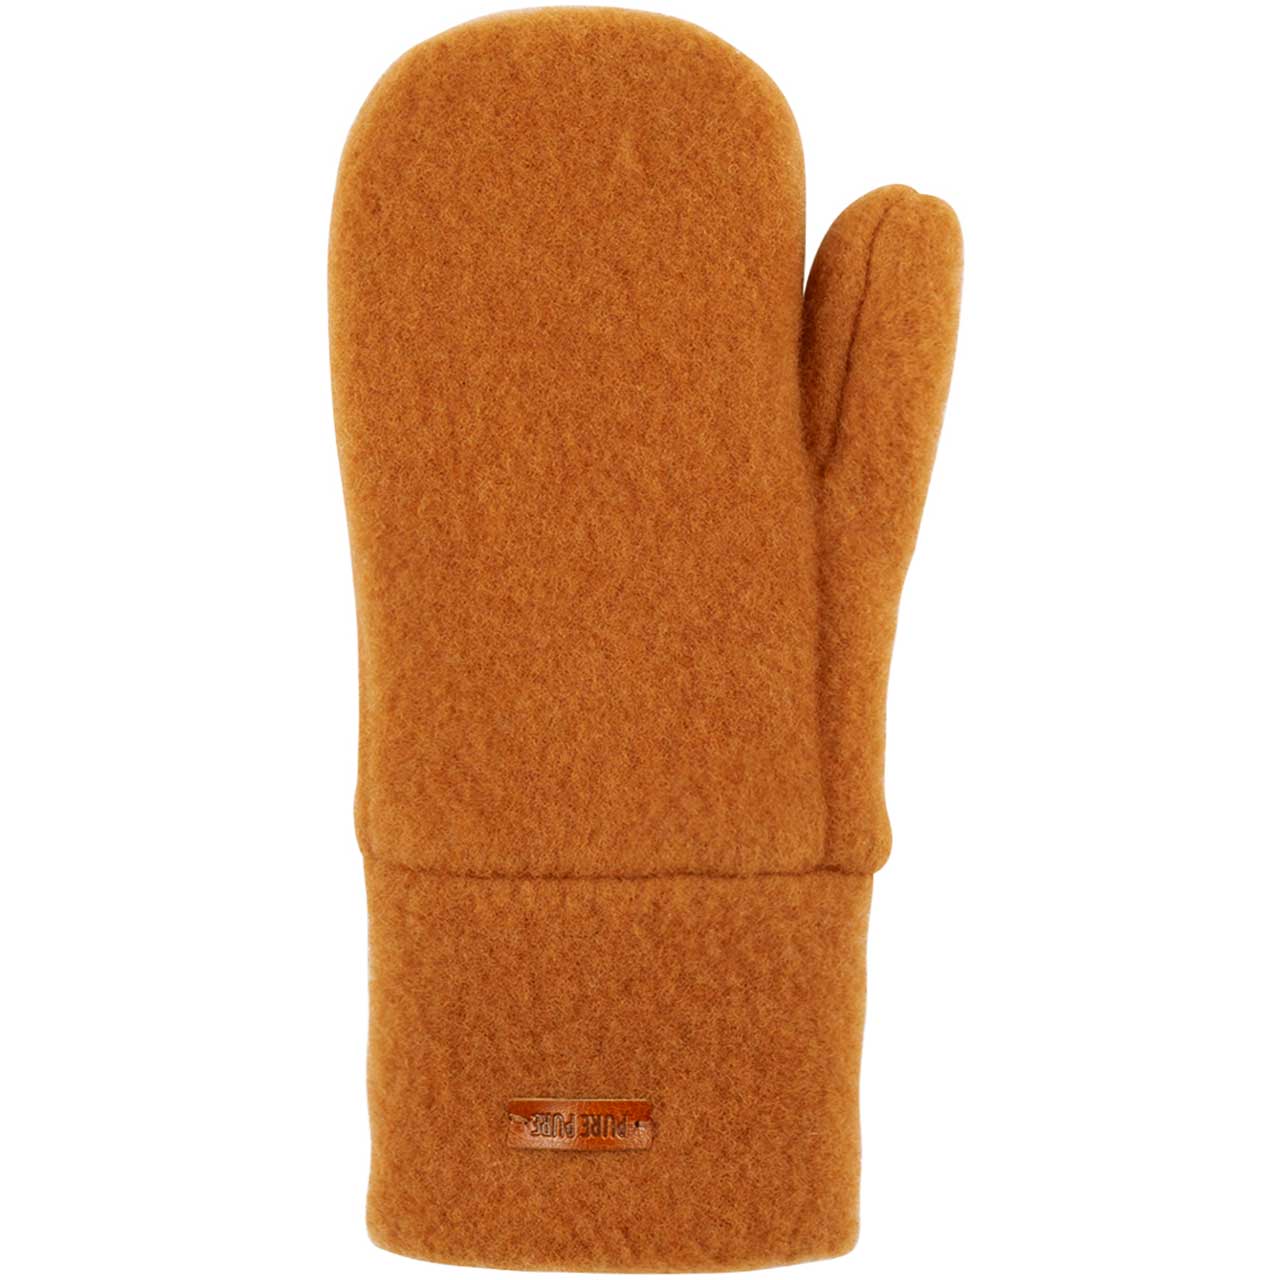 Kinder Handschuhe Wolle karamell-braun